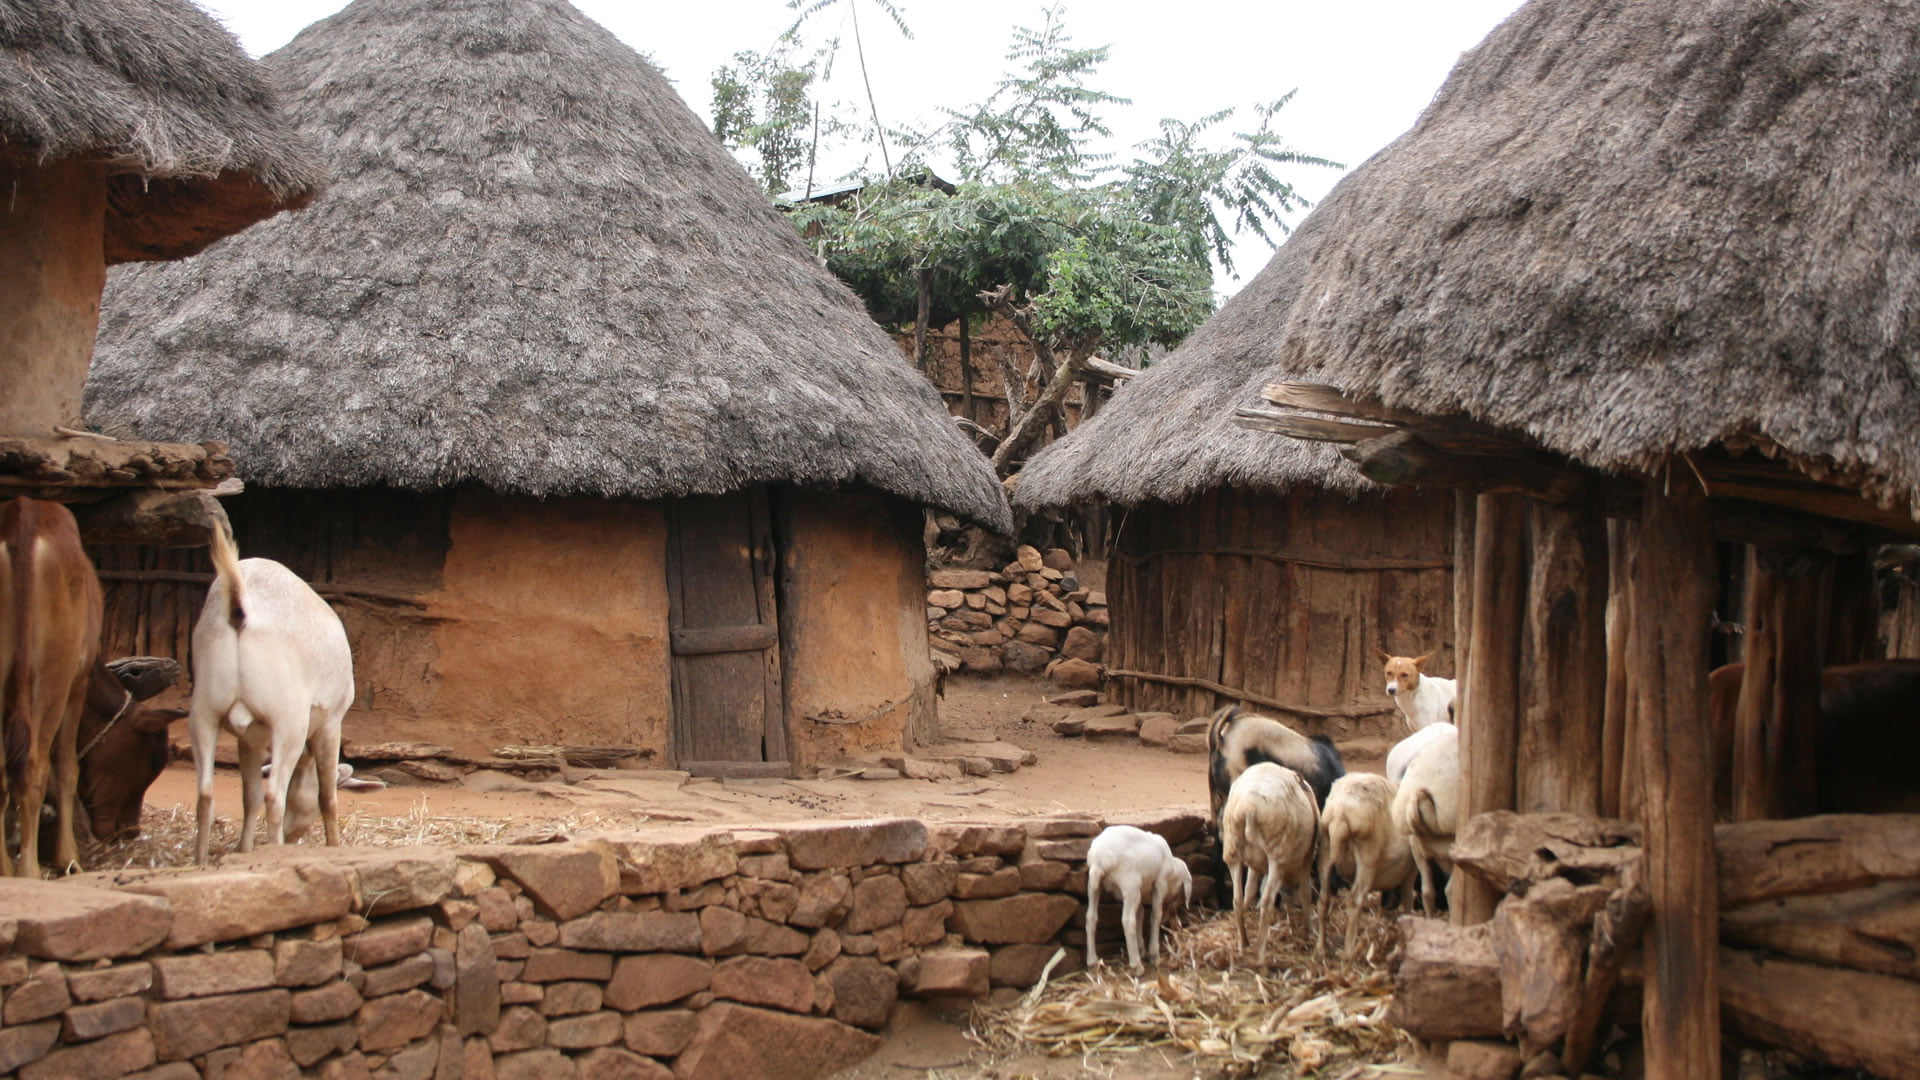 Viviendas típicas de la Comunidad Konso (Etiopía)